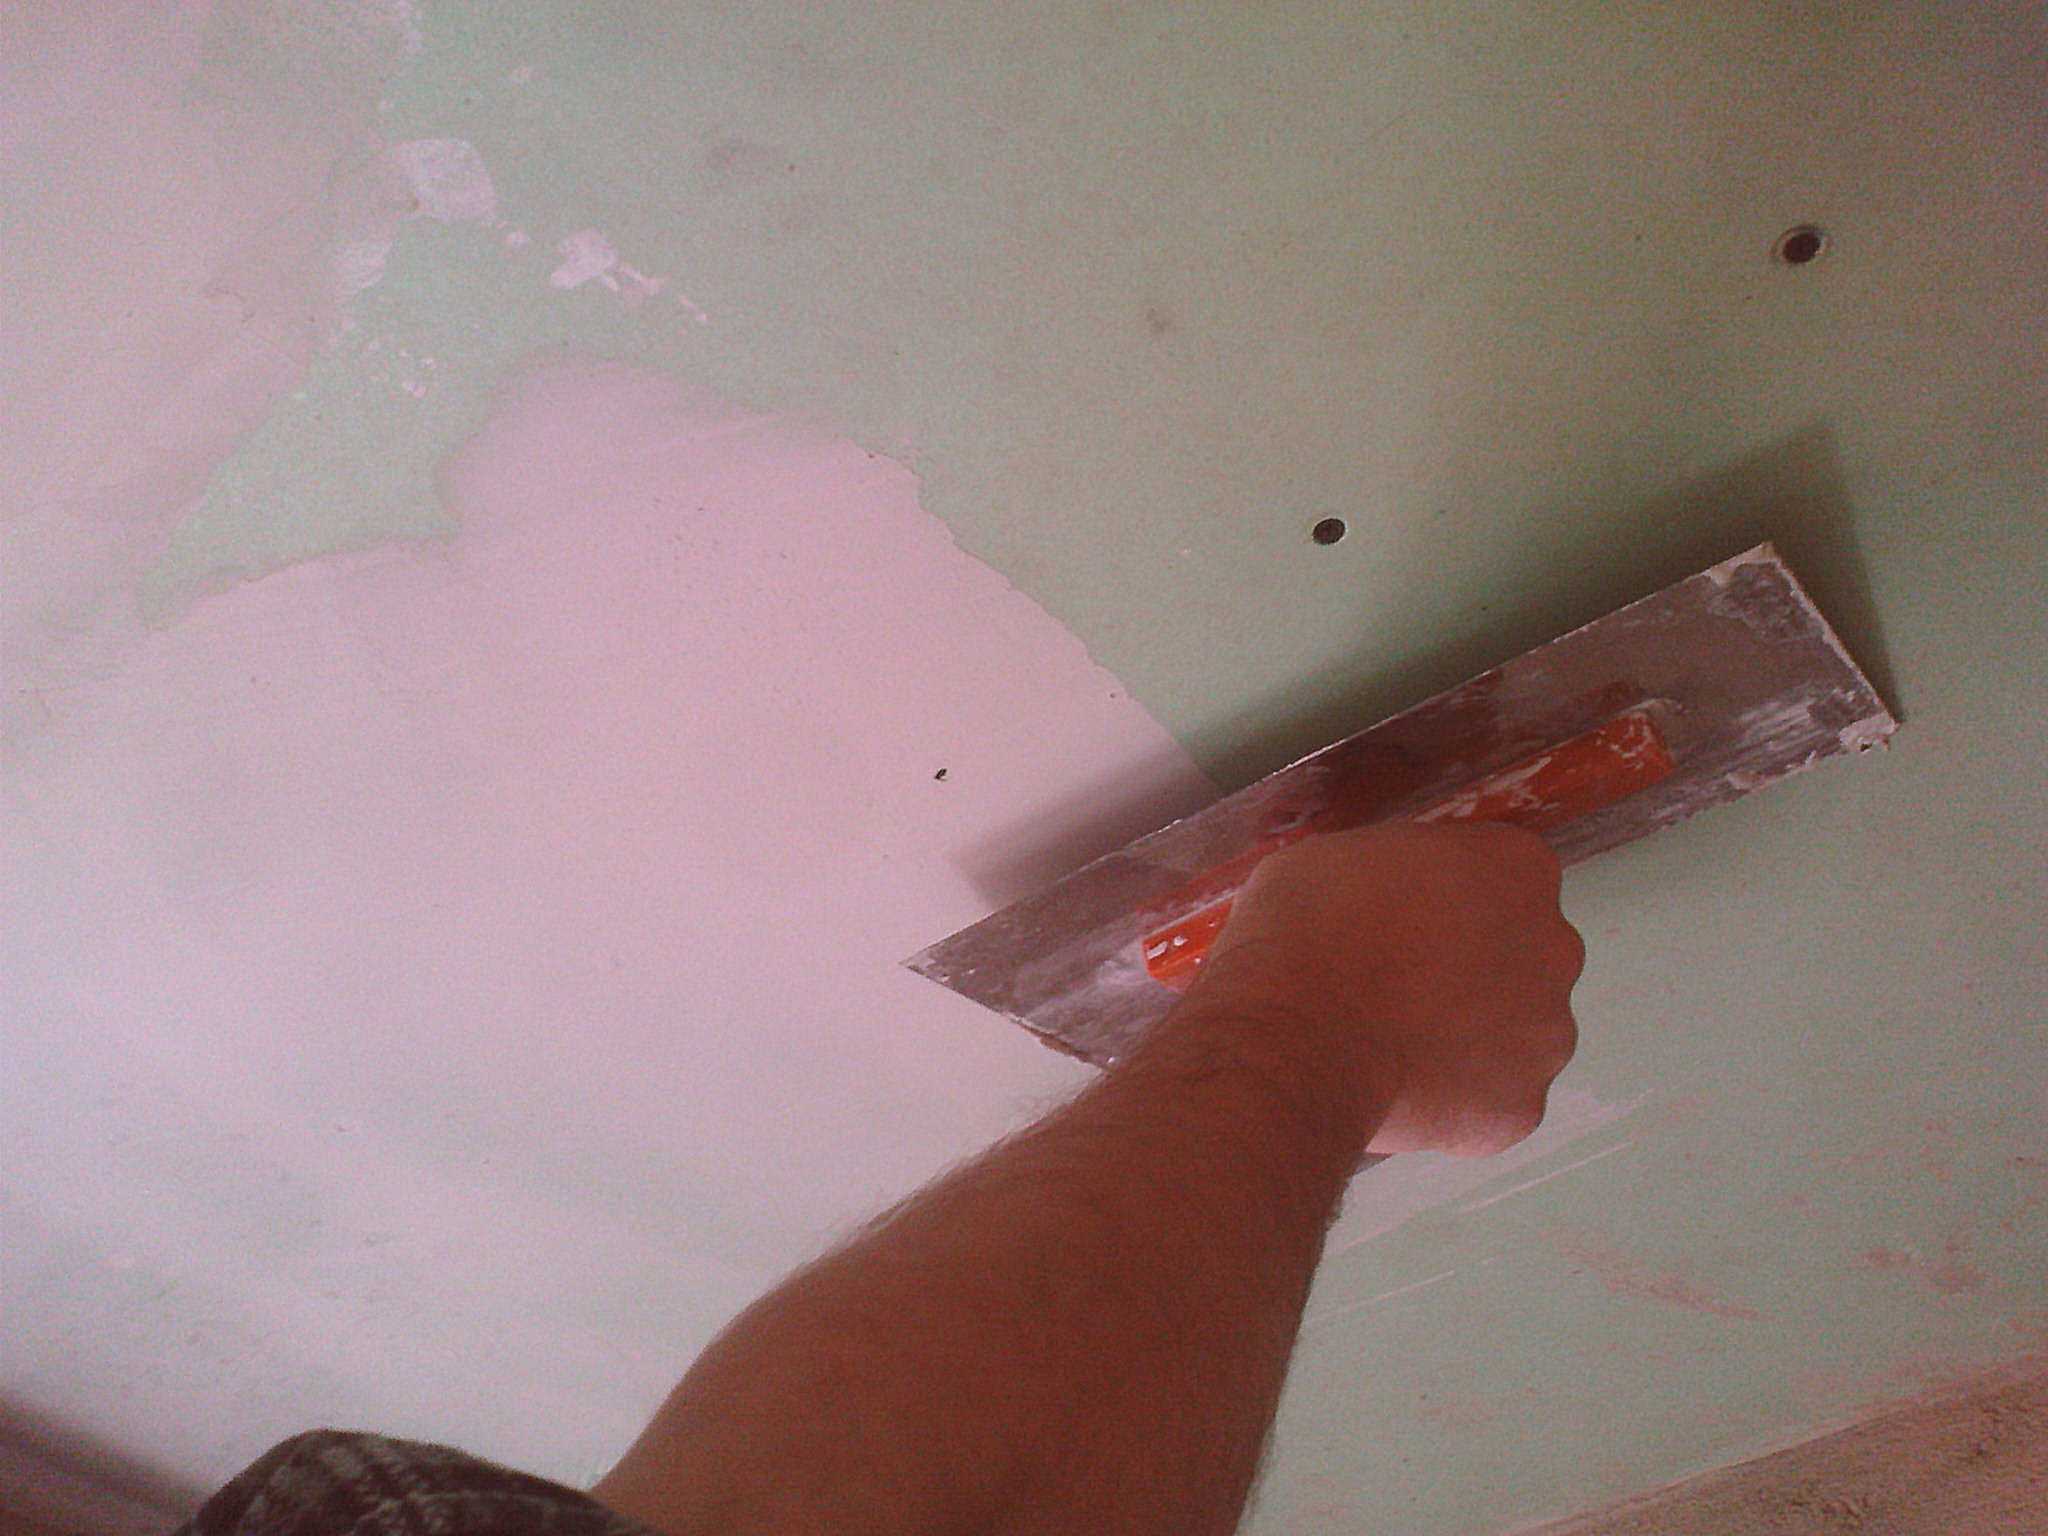 Как правильно шпаклевать потолок - технология: как и чем шлифовать поверхность после шпаклевки, сколько сохнет финишная отделка, детали на фото и видео